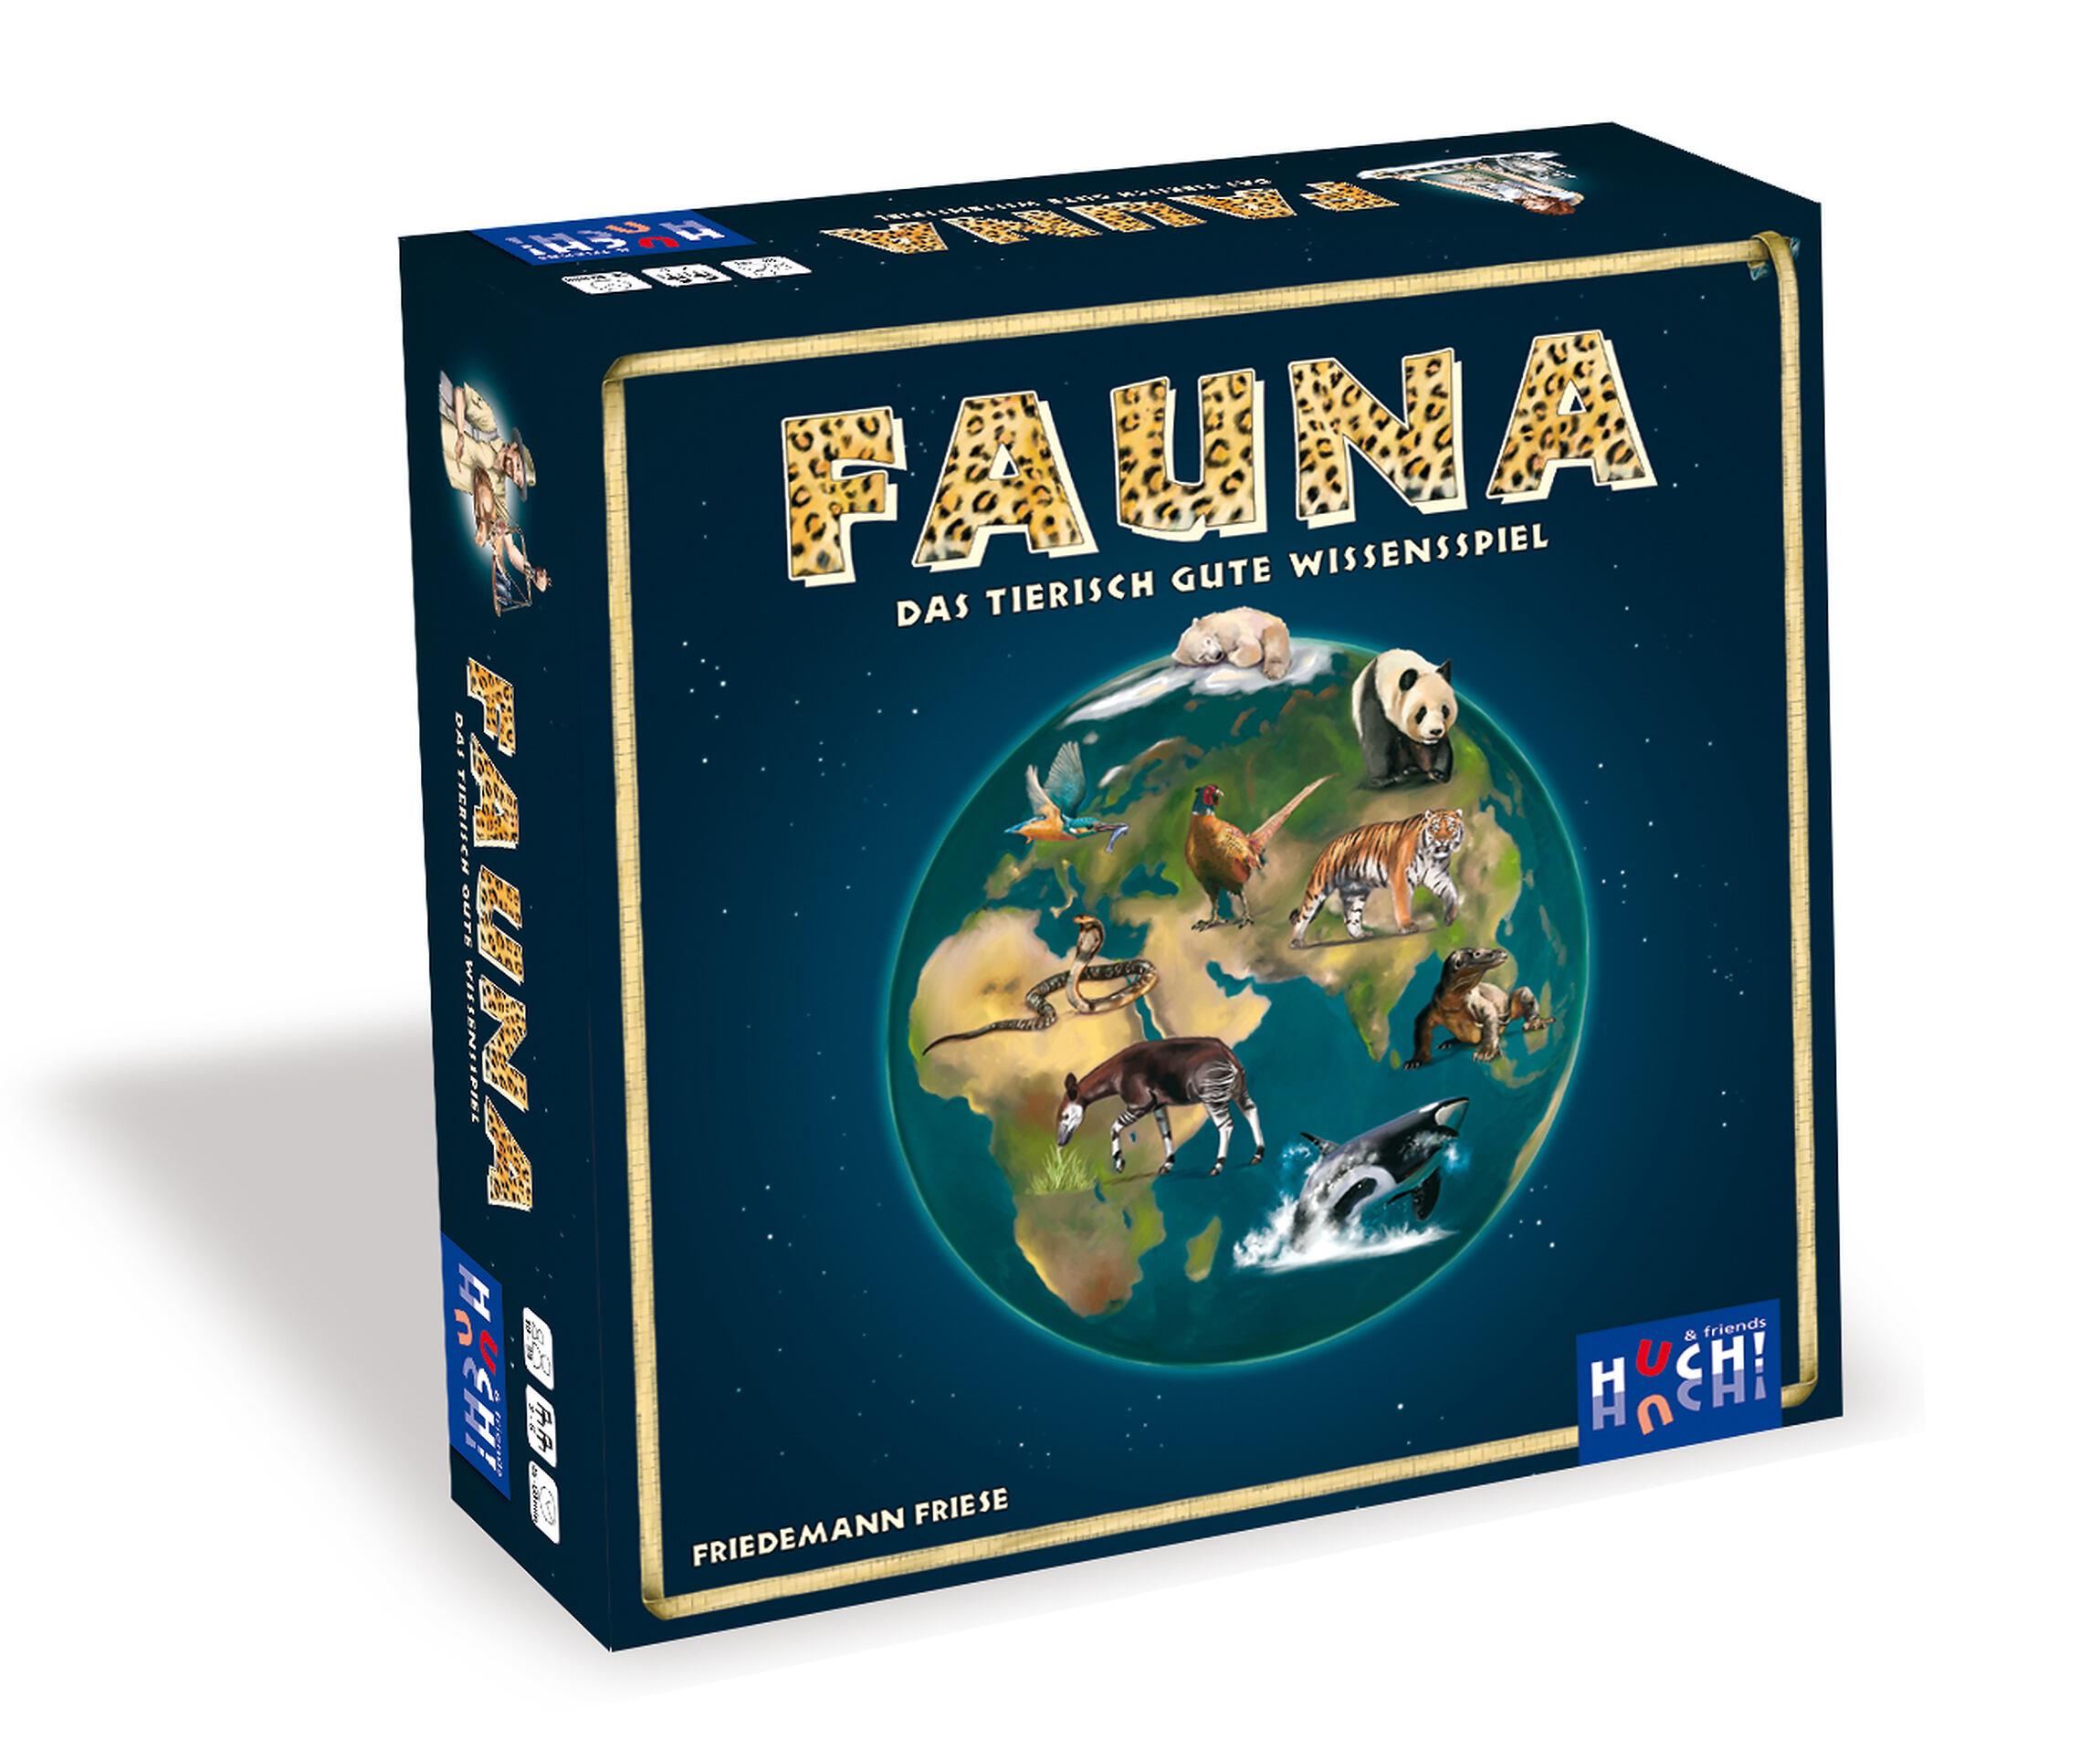 Fauna - Das tierisch gute Wissensspiel